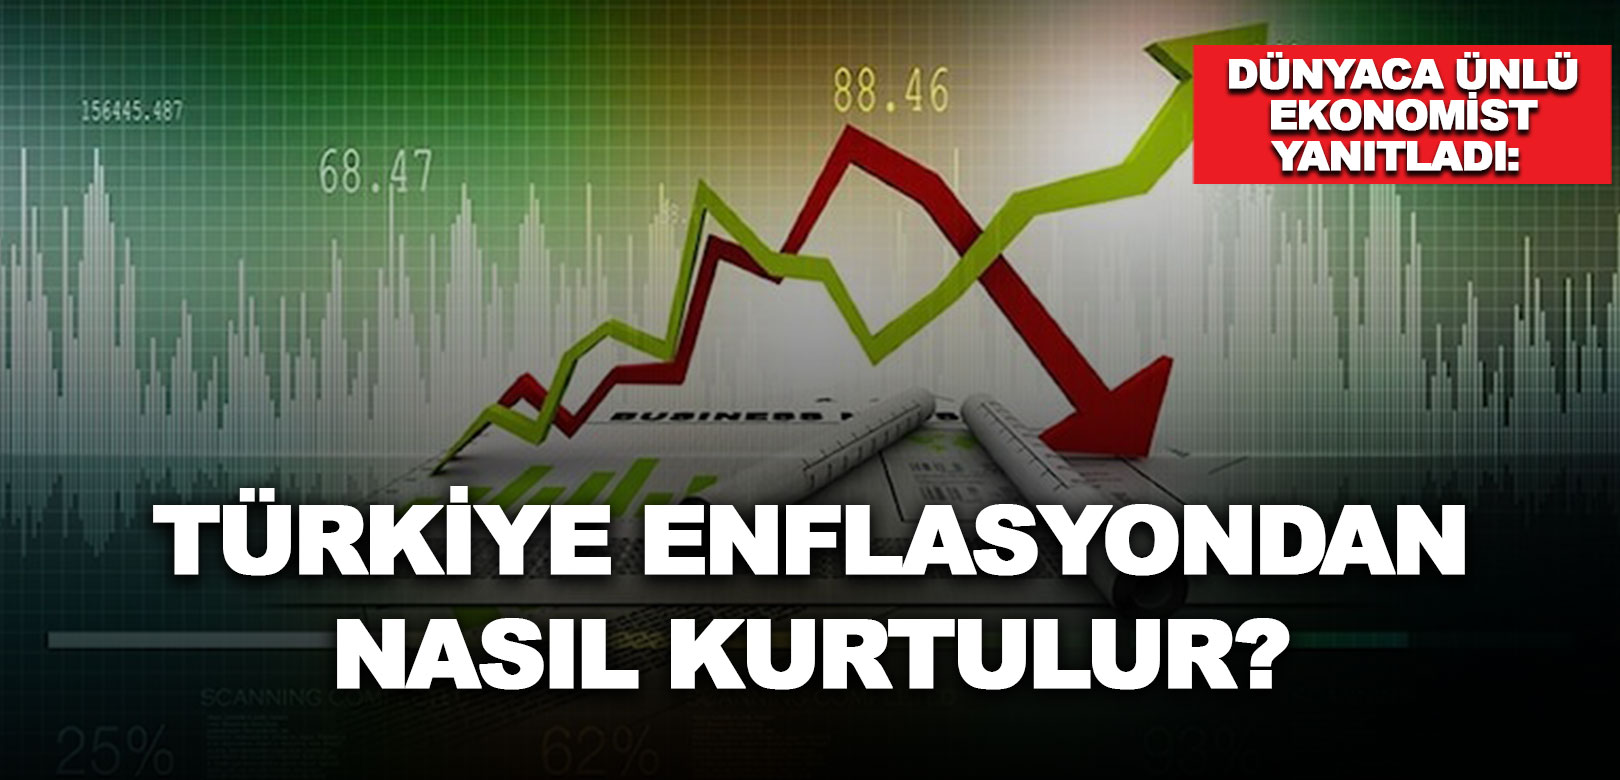 Dünyaca ünlü ekonomist yanıtladı: Türkiye enflasyondan nasıl kurtulur?